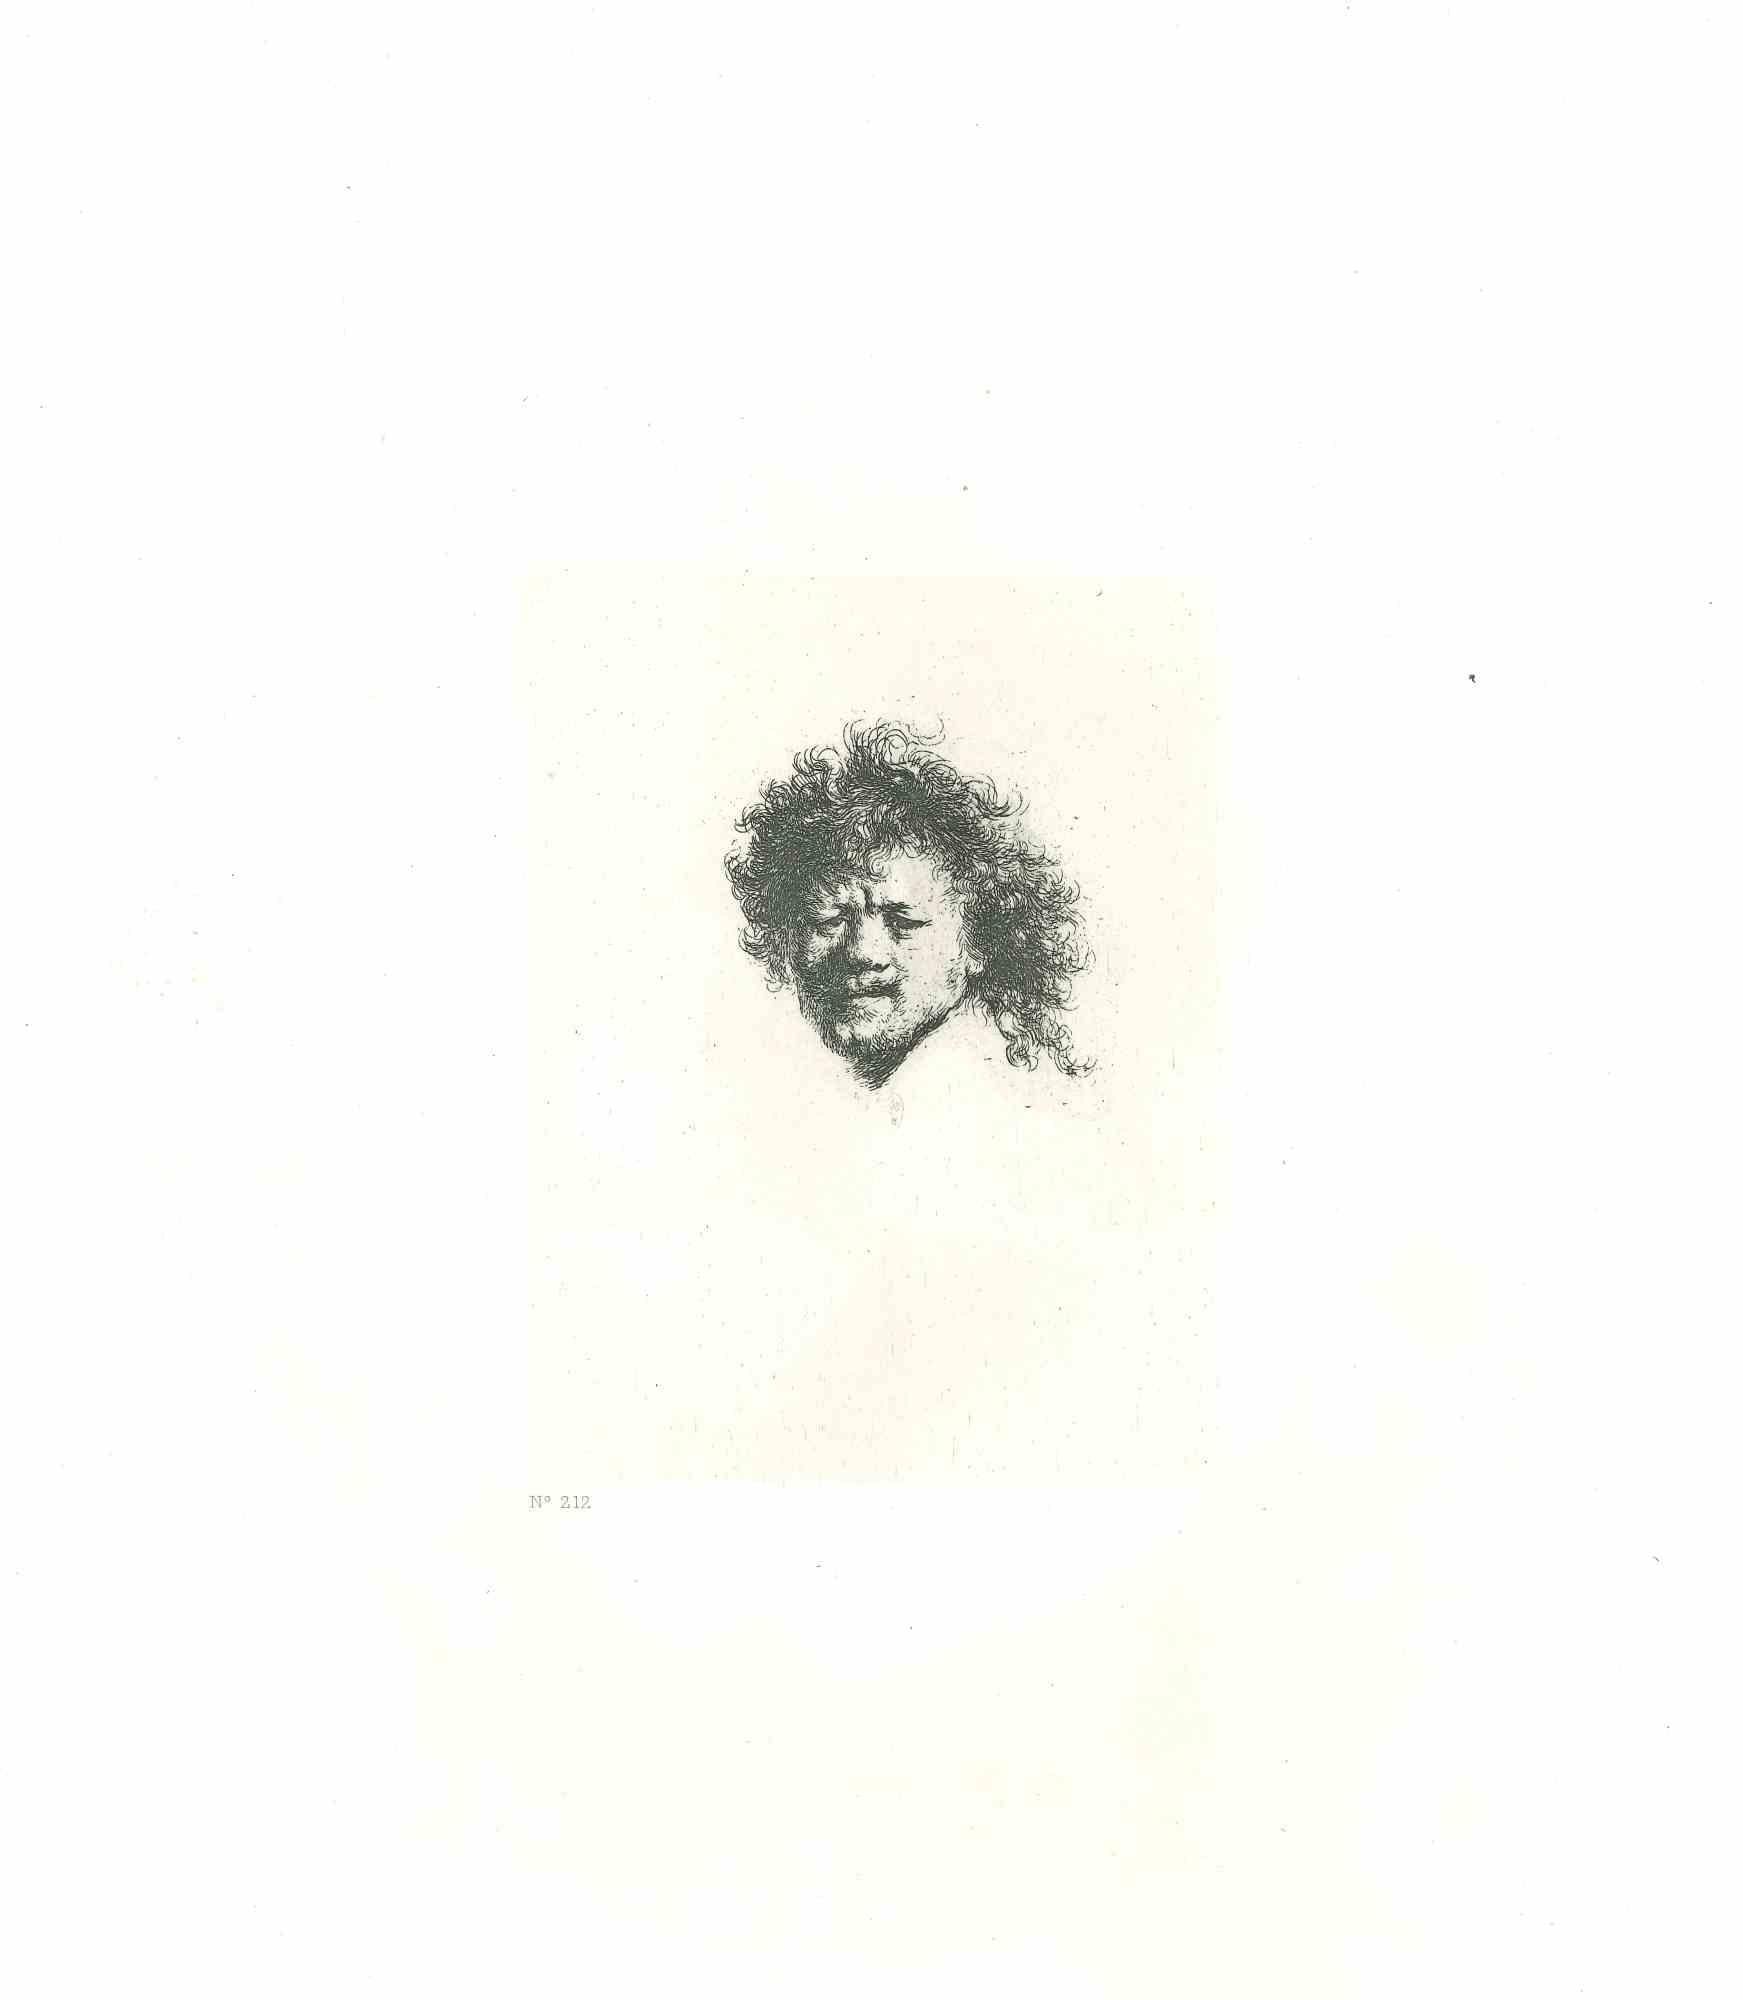 Self-Portrait avec longs cheveux bouclés - eau-forte d'après Rembrandt - 19ème siècle - Print de Charles Amand Durand